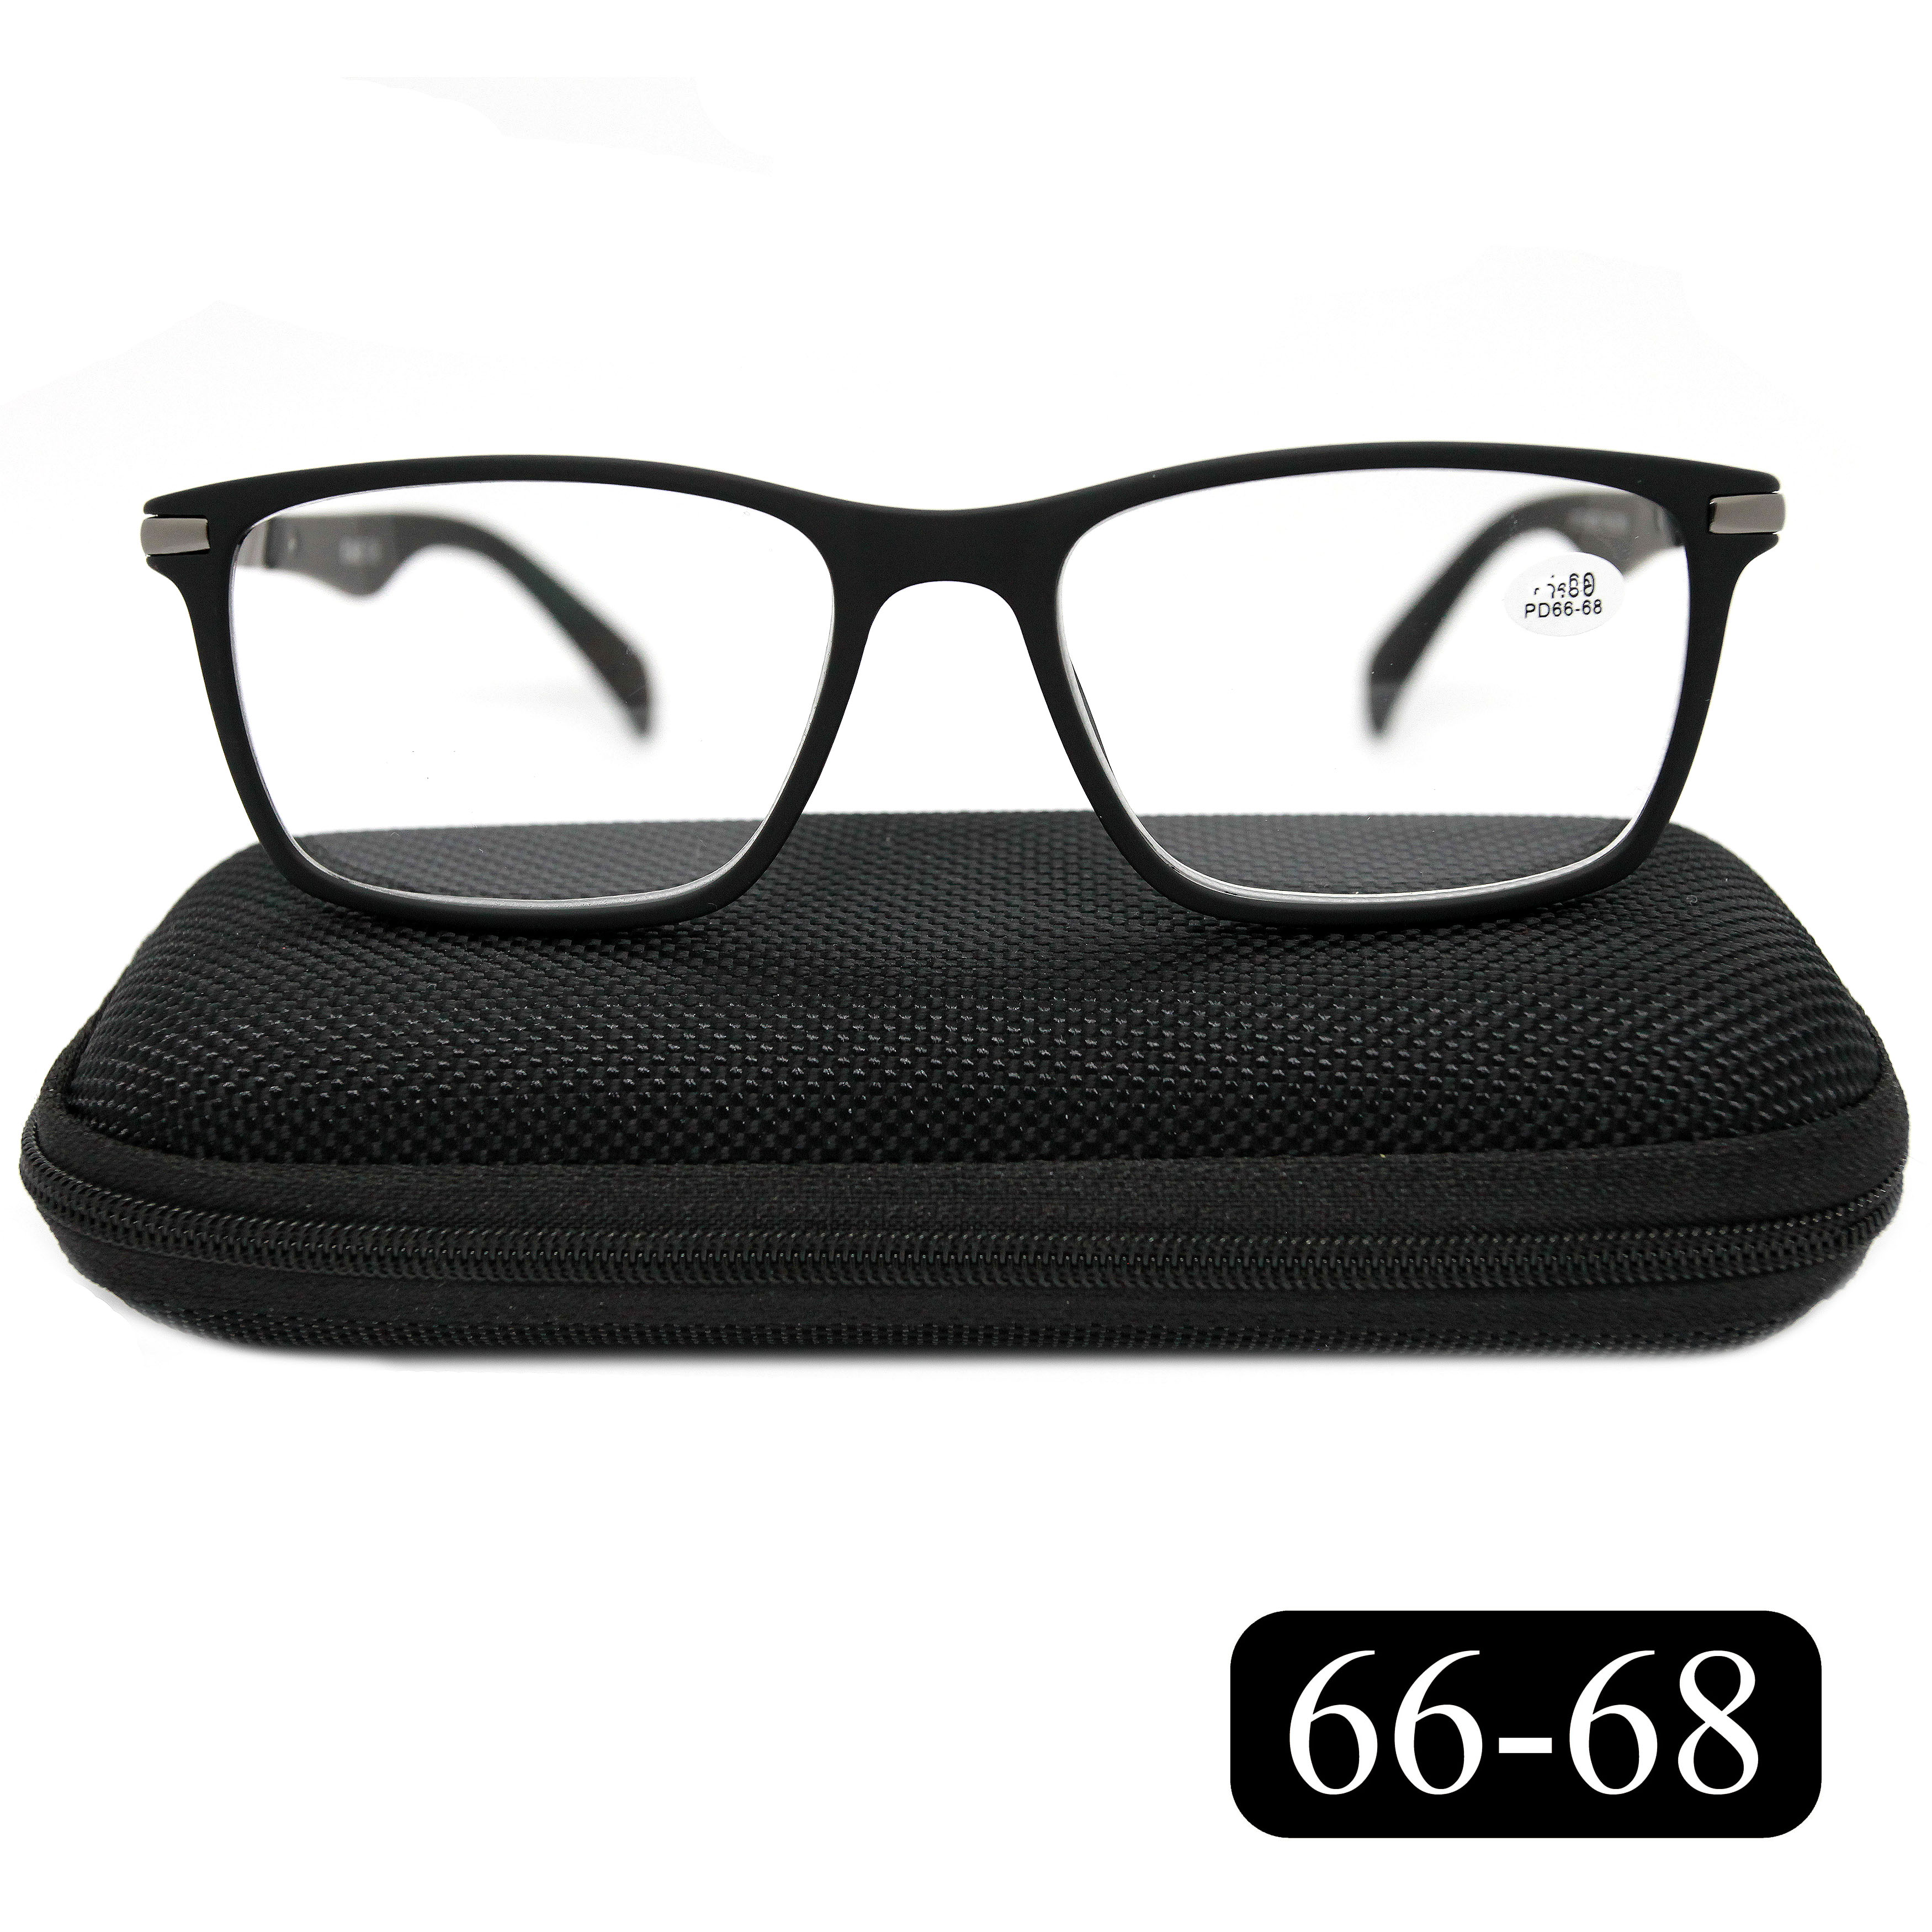 Готовые очки для зрения EAE 2177 -2.00, c футляром, цвет черный, РЦ 66-68